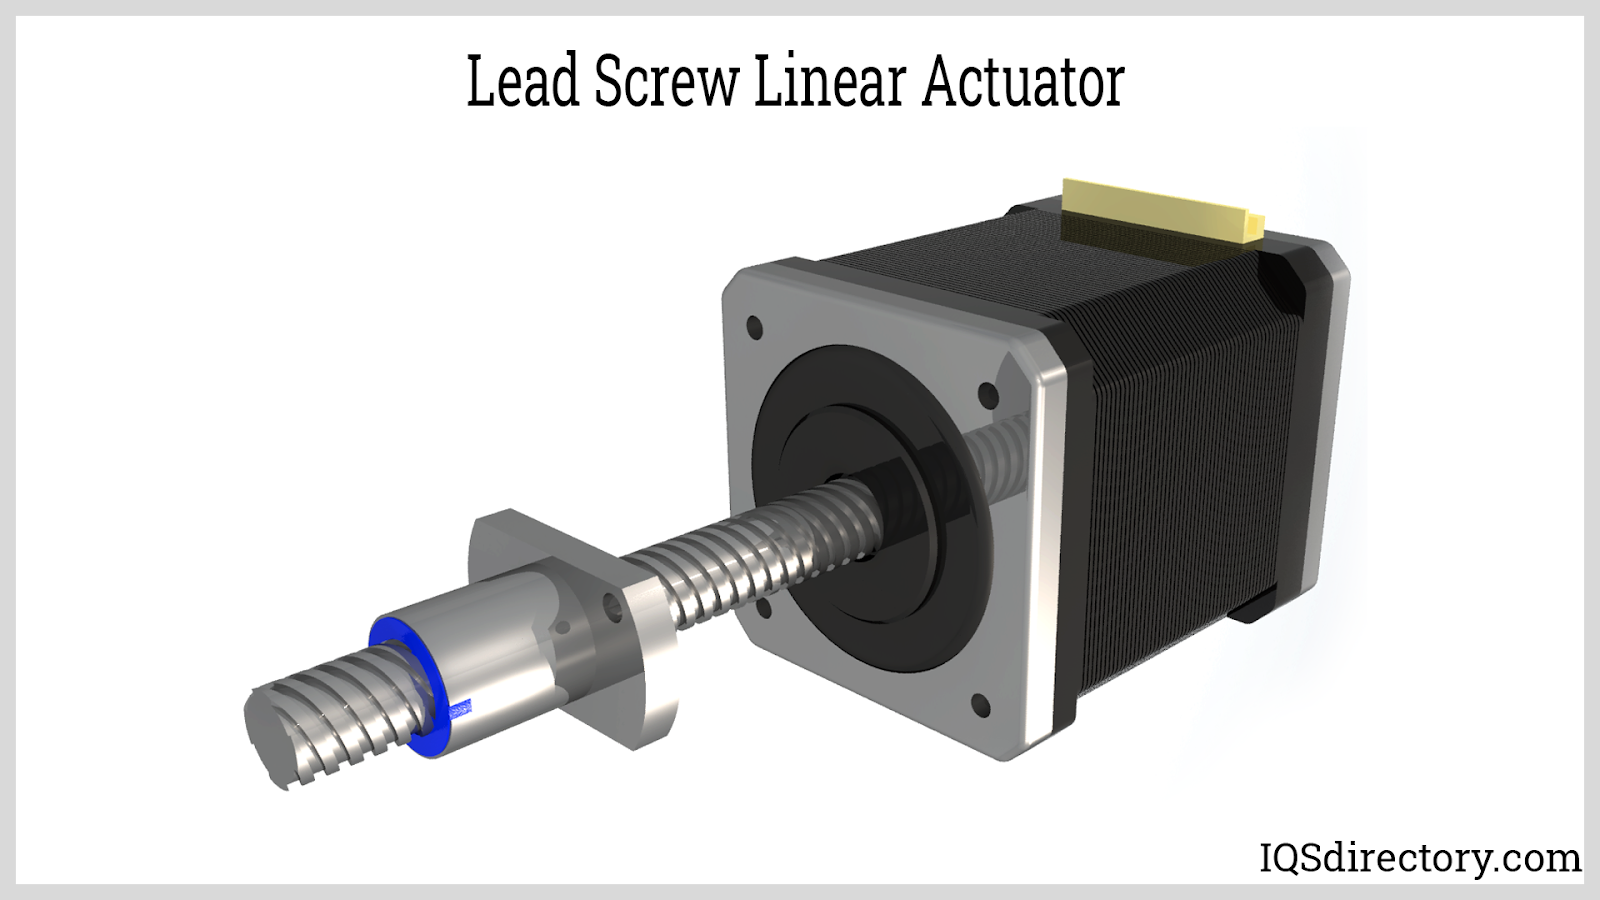 Lead Screw Linear Actuator